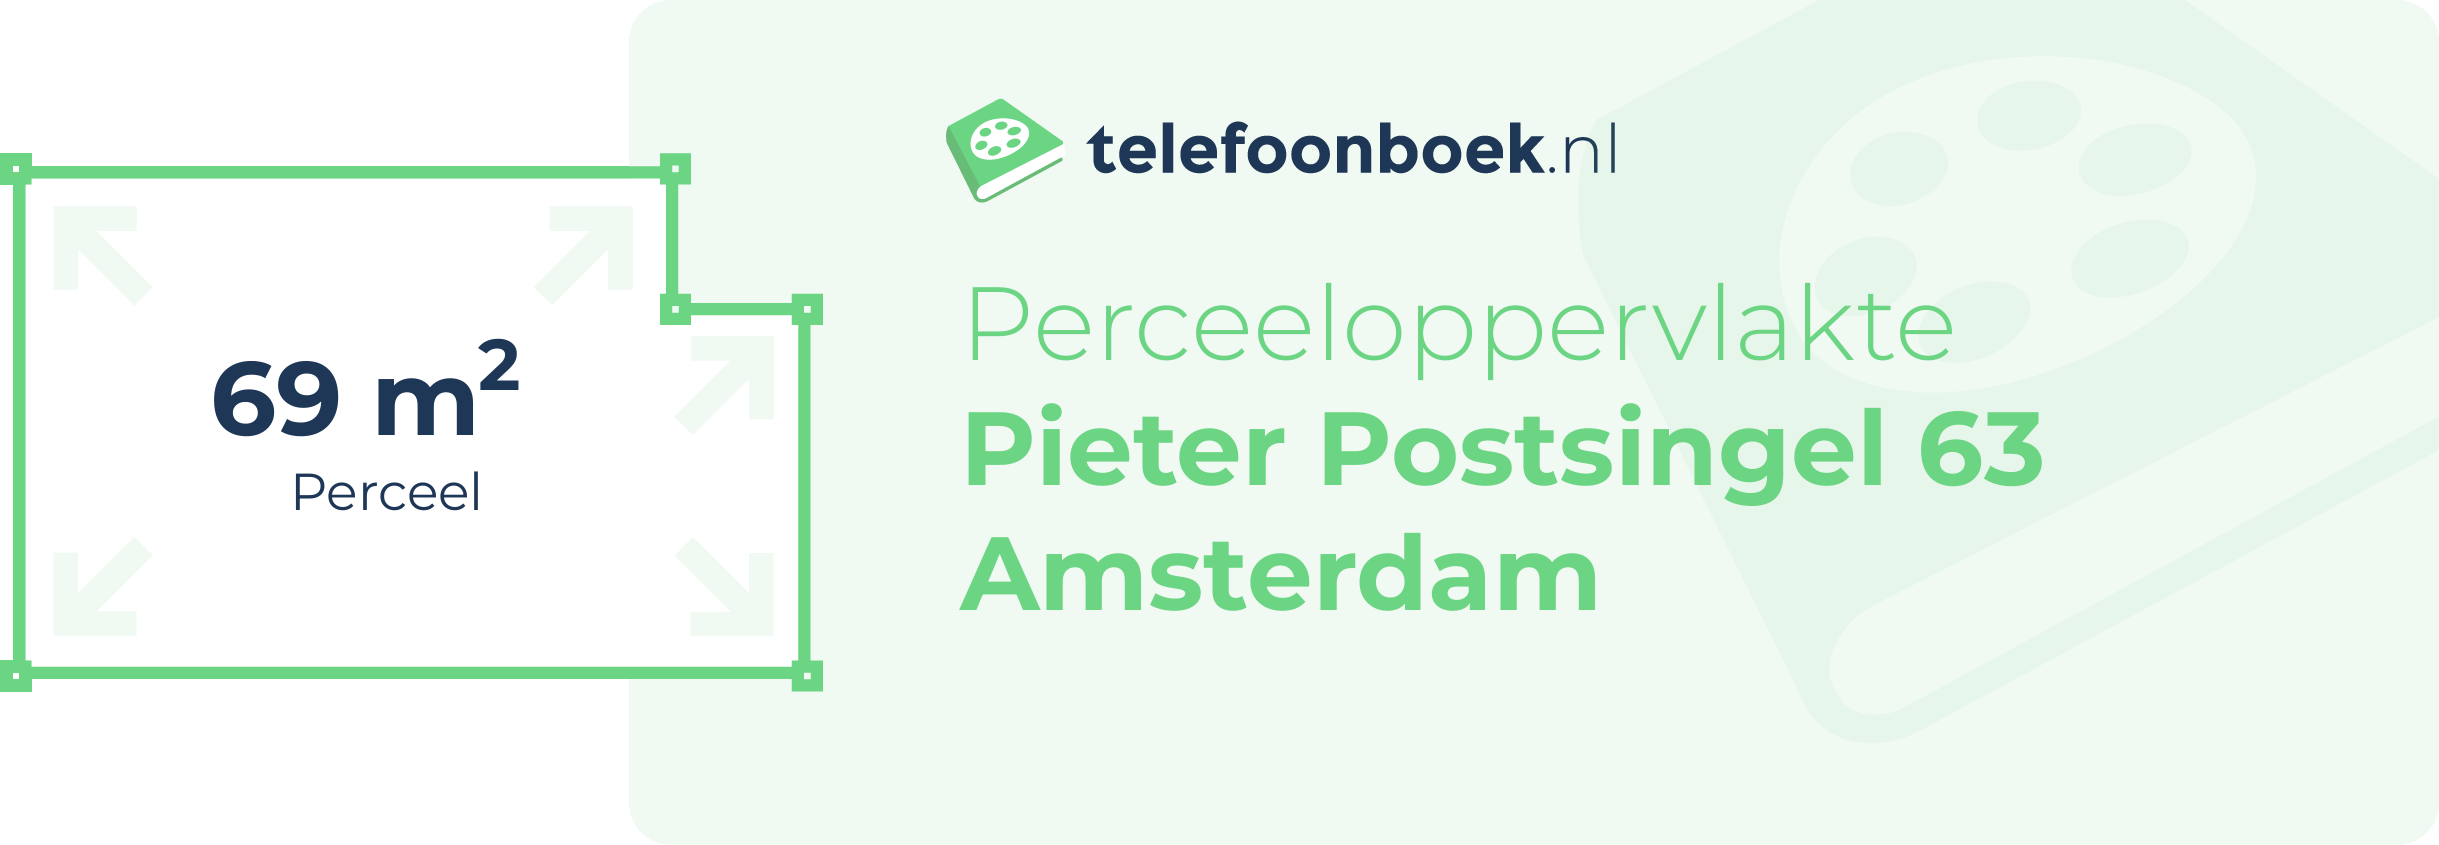 Perceeloppervlakte Pieter Postsingel 63 Amsterdam